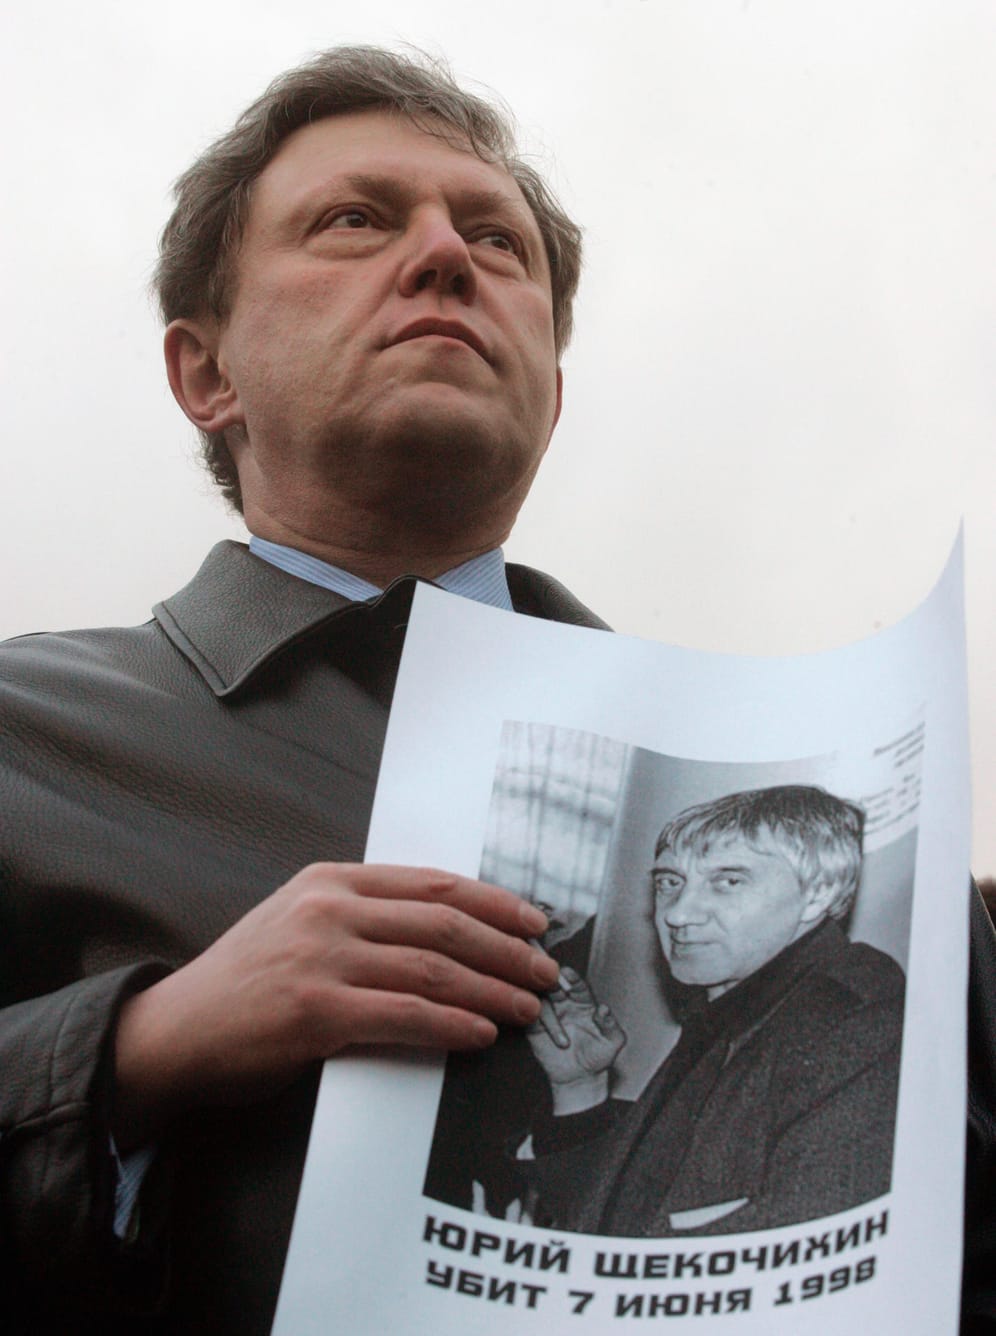 Juri Schtschekotschichin (2003): Der Journalist starb qualvoll an plötzlich auftretendem multiplem Organversagen. Eine Vergiftung wurde vermutet. Er recherchierte über den FSB.